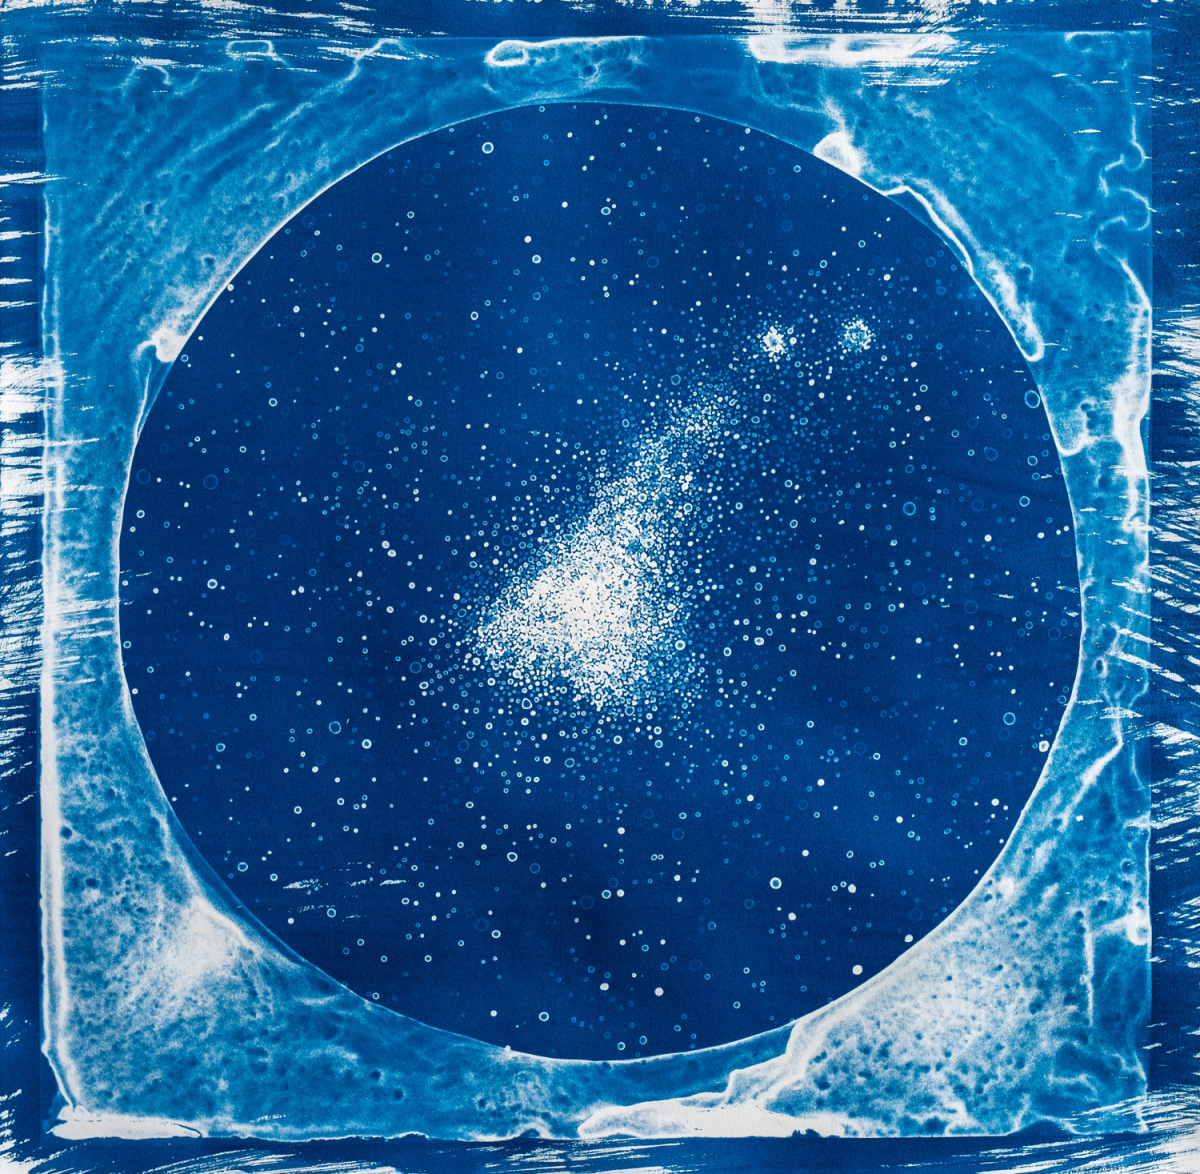 Lia Halloran, Small Magellanic Cloud, 2017, cyanotype print, edition of 25, 15 x 15 in.